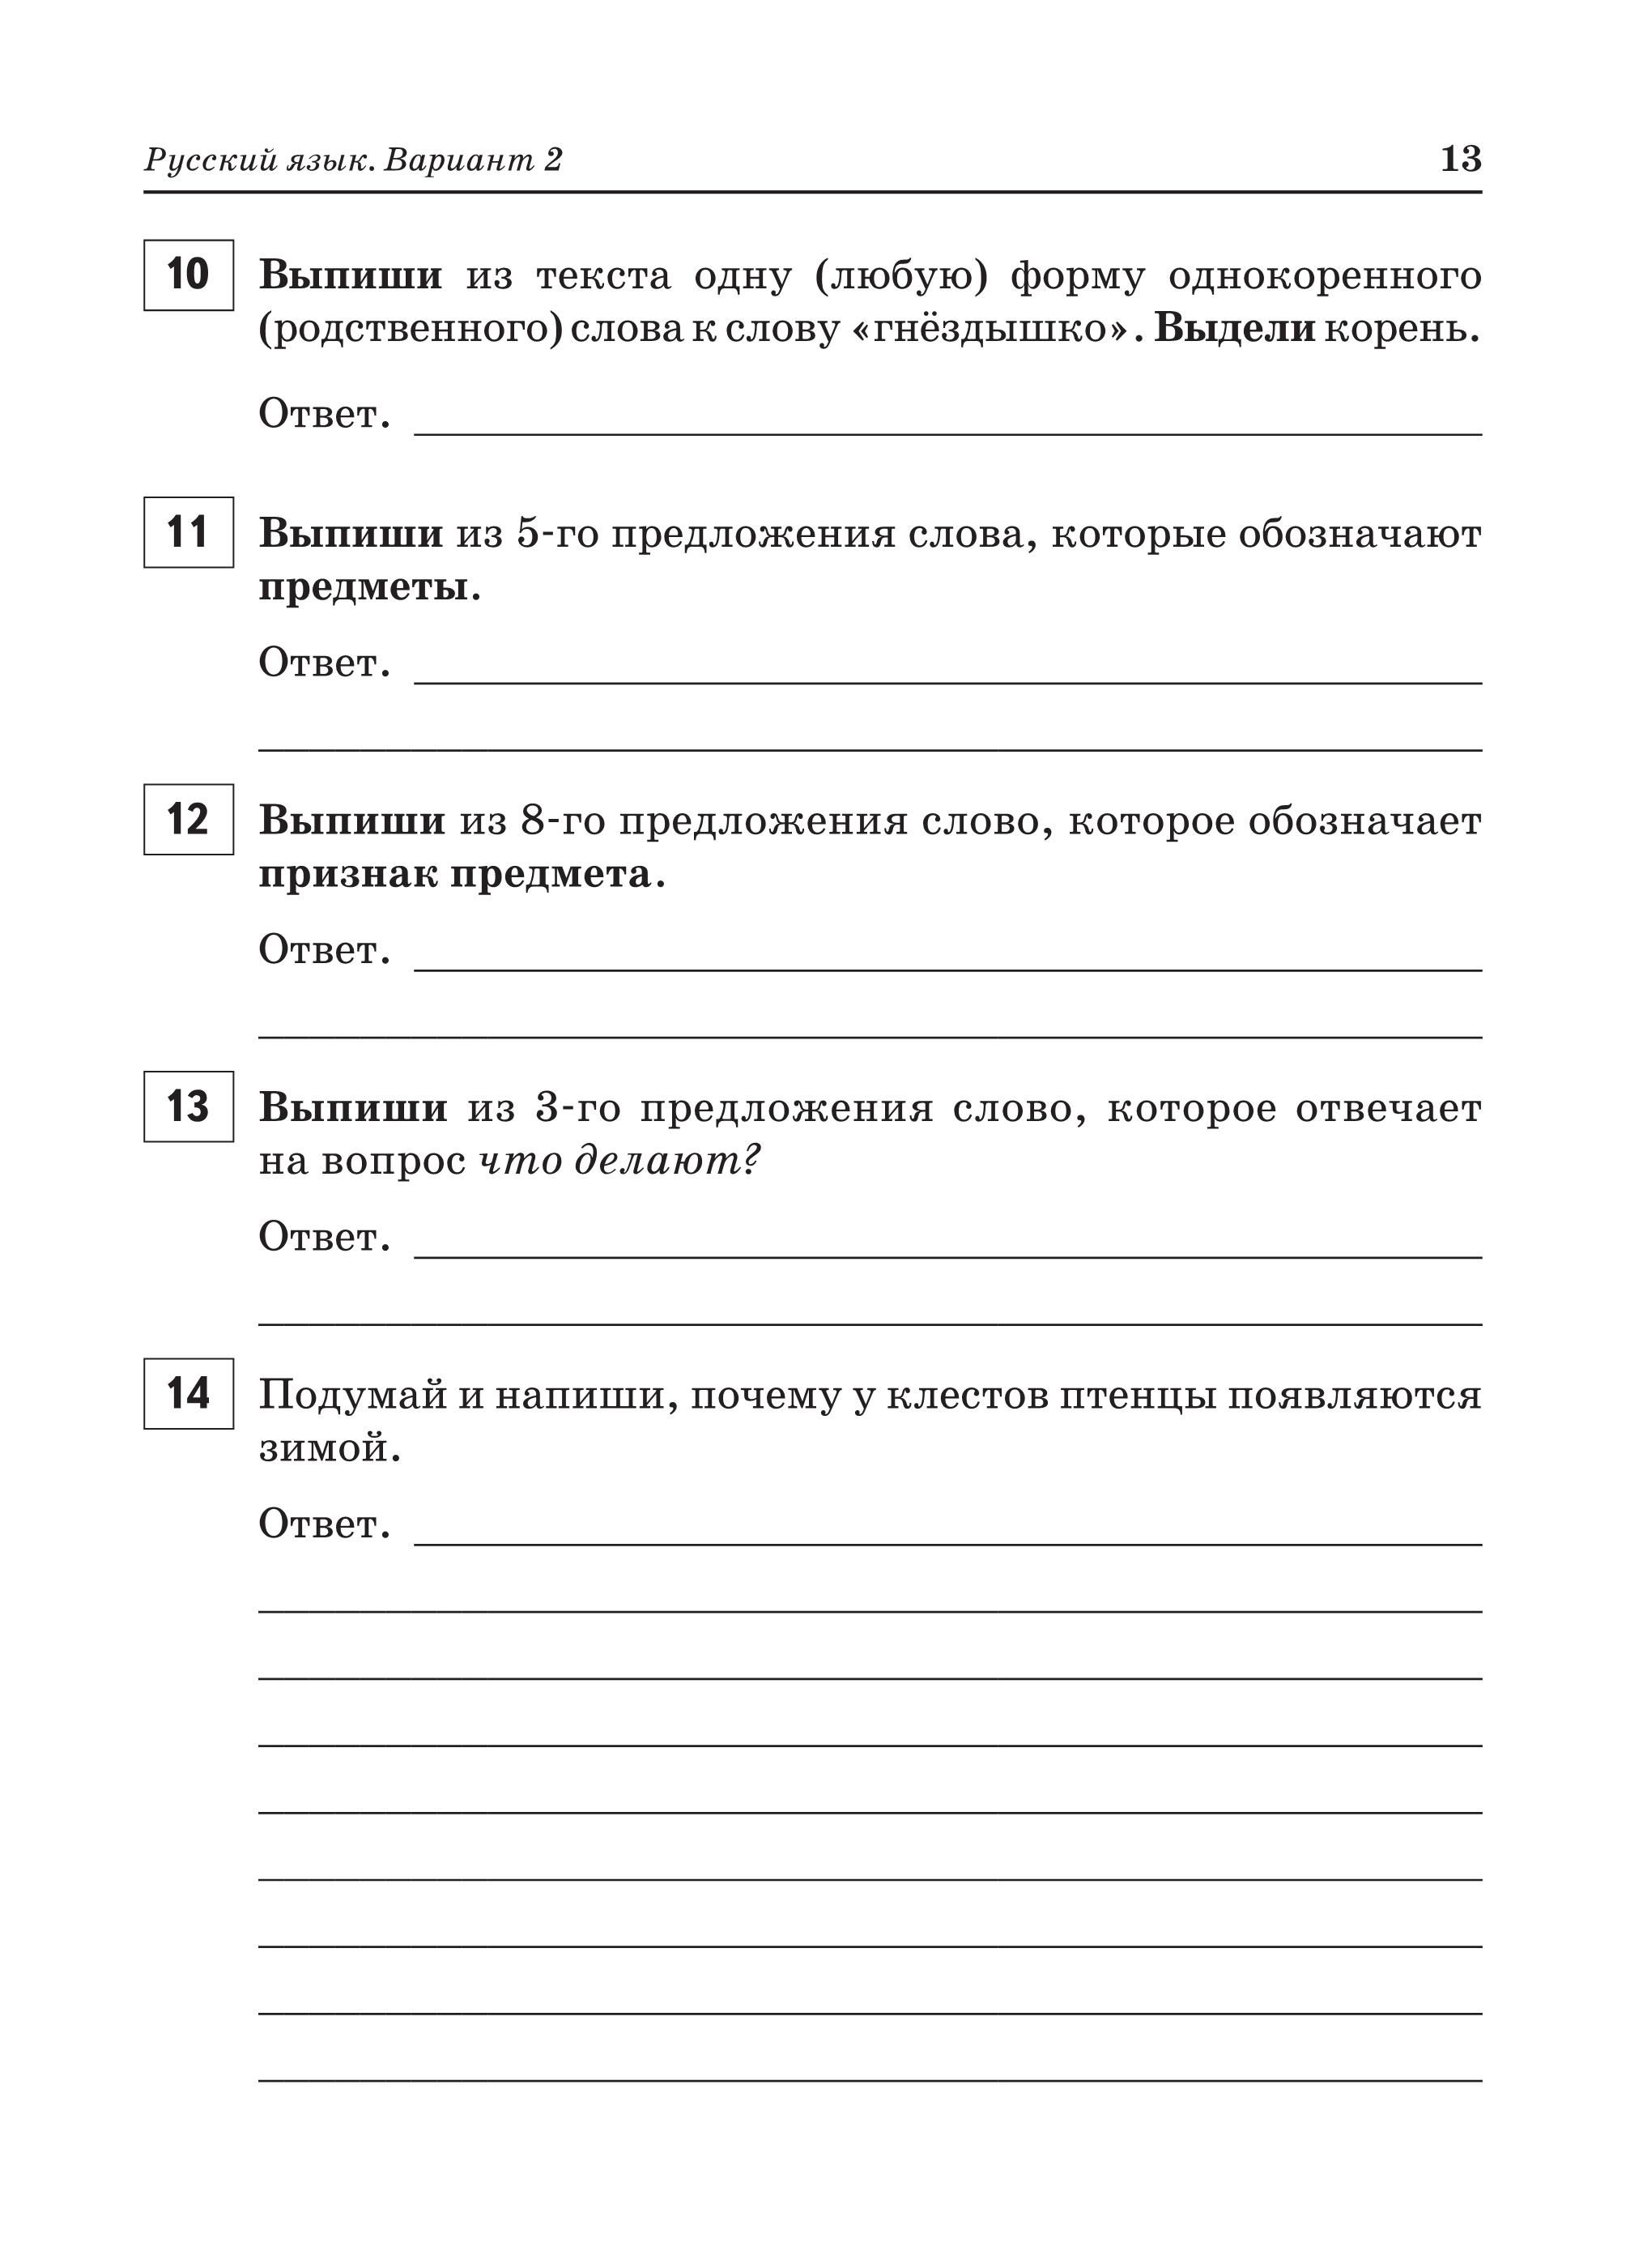 ВПР. 2-й класс. Русский язык, математика, окружающий мир. 15 тренировочных вариантов